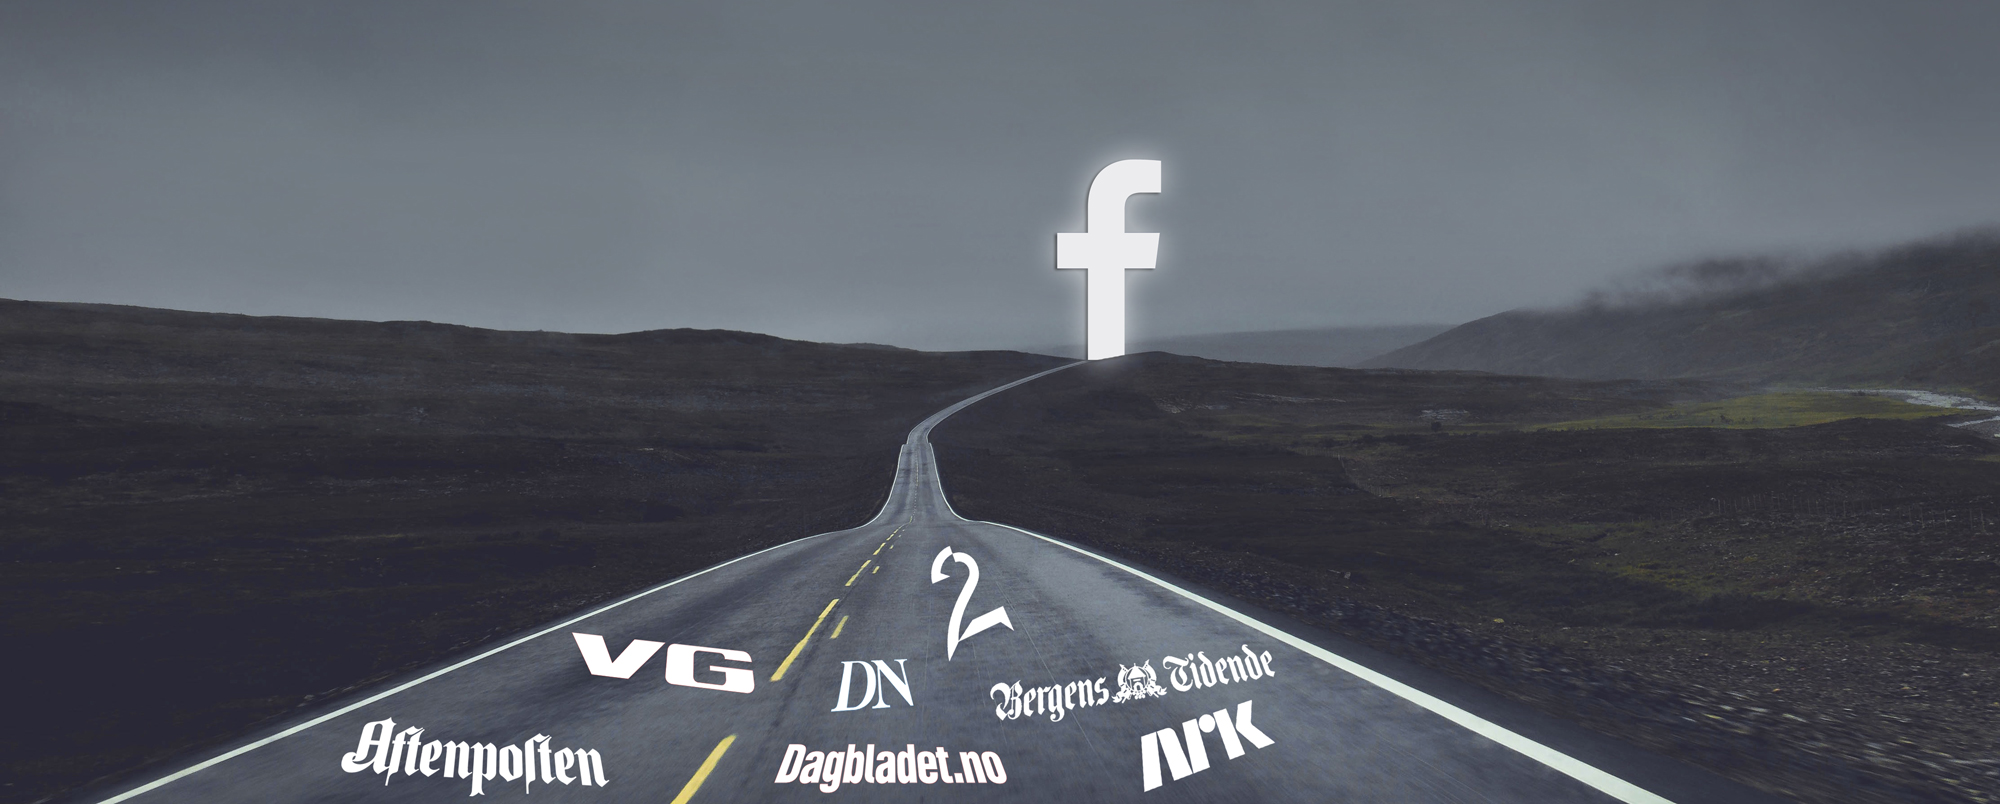 Velger norske medier å samarbeide med Facebook om publisering av artikler? Flere har gjort det allerede.  Illustrasjon Ståle Grut / NRKbeta via  Olivier Guillard